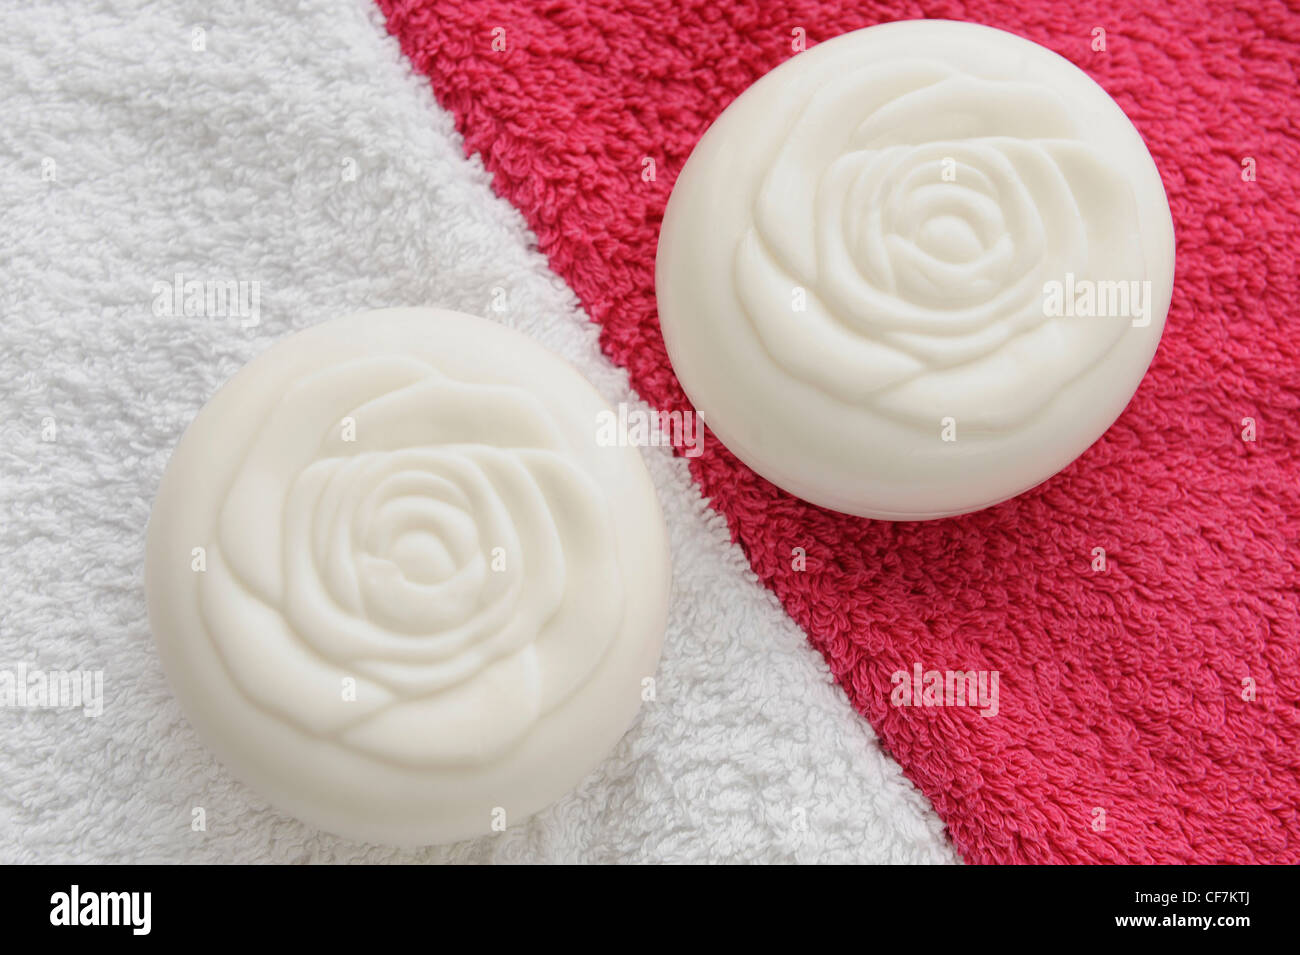 Dos barras de jabón redondo blanco un patrón en forma de rosa en la parte  superior de ellos, uno en una toalla blanca, el otro sobre una toalla rosa  brillante Fotografía de